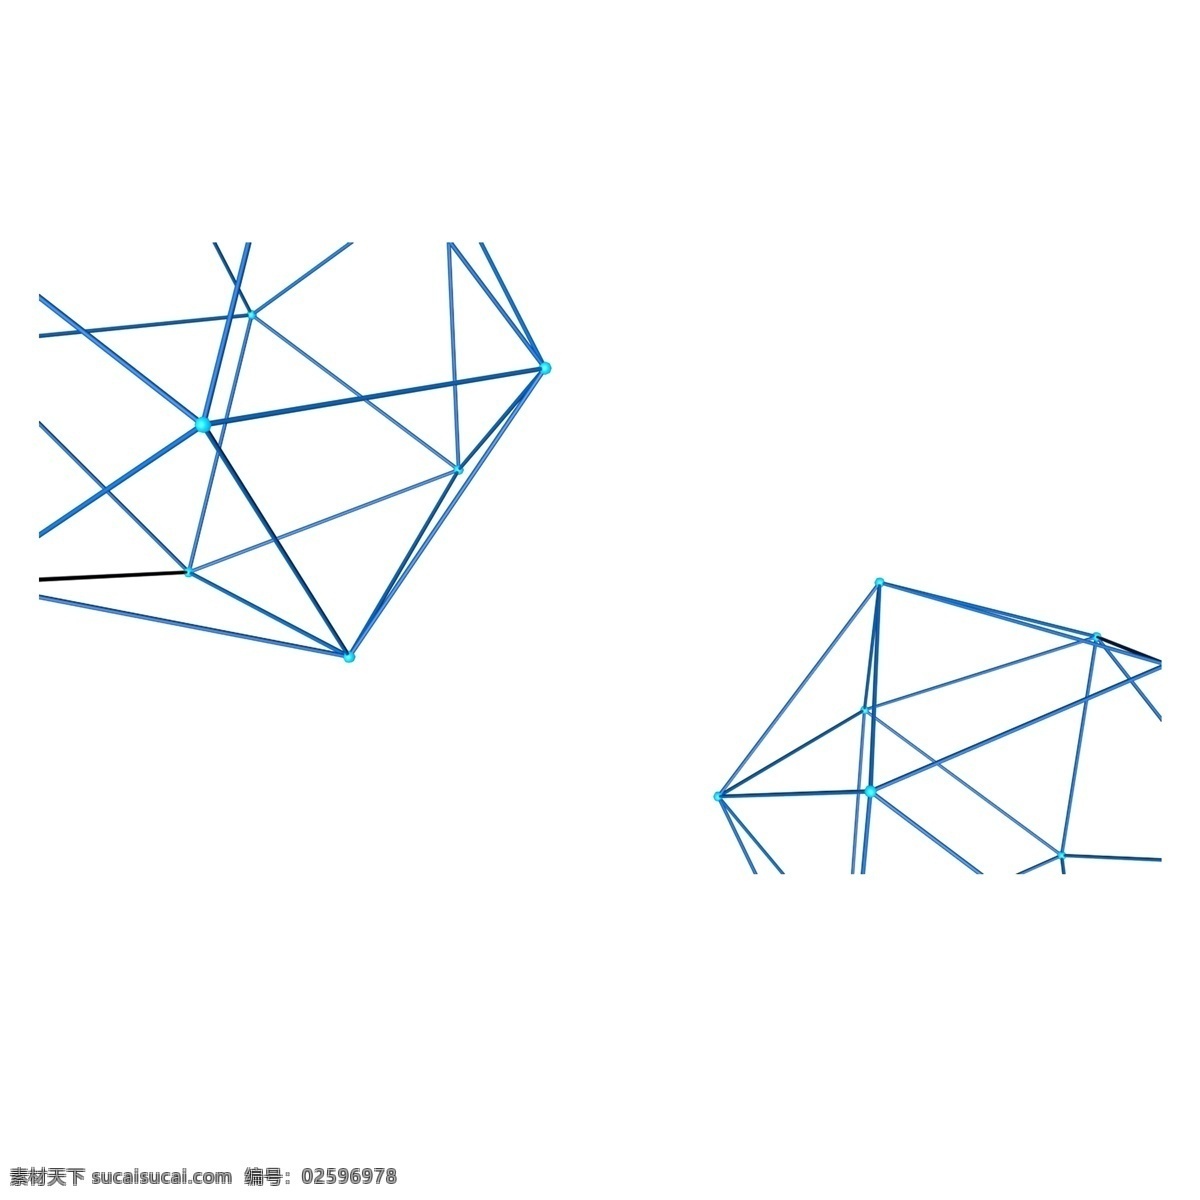 c4d 蓝色 不规则 空间 网格 空间网格 立体的 蓝色网格 海报 科技